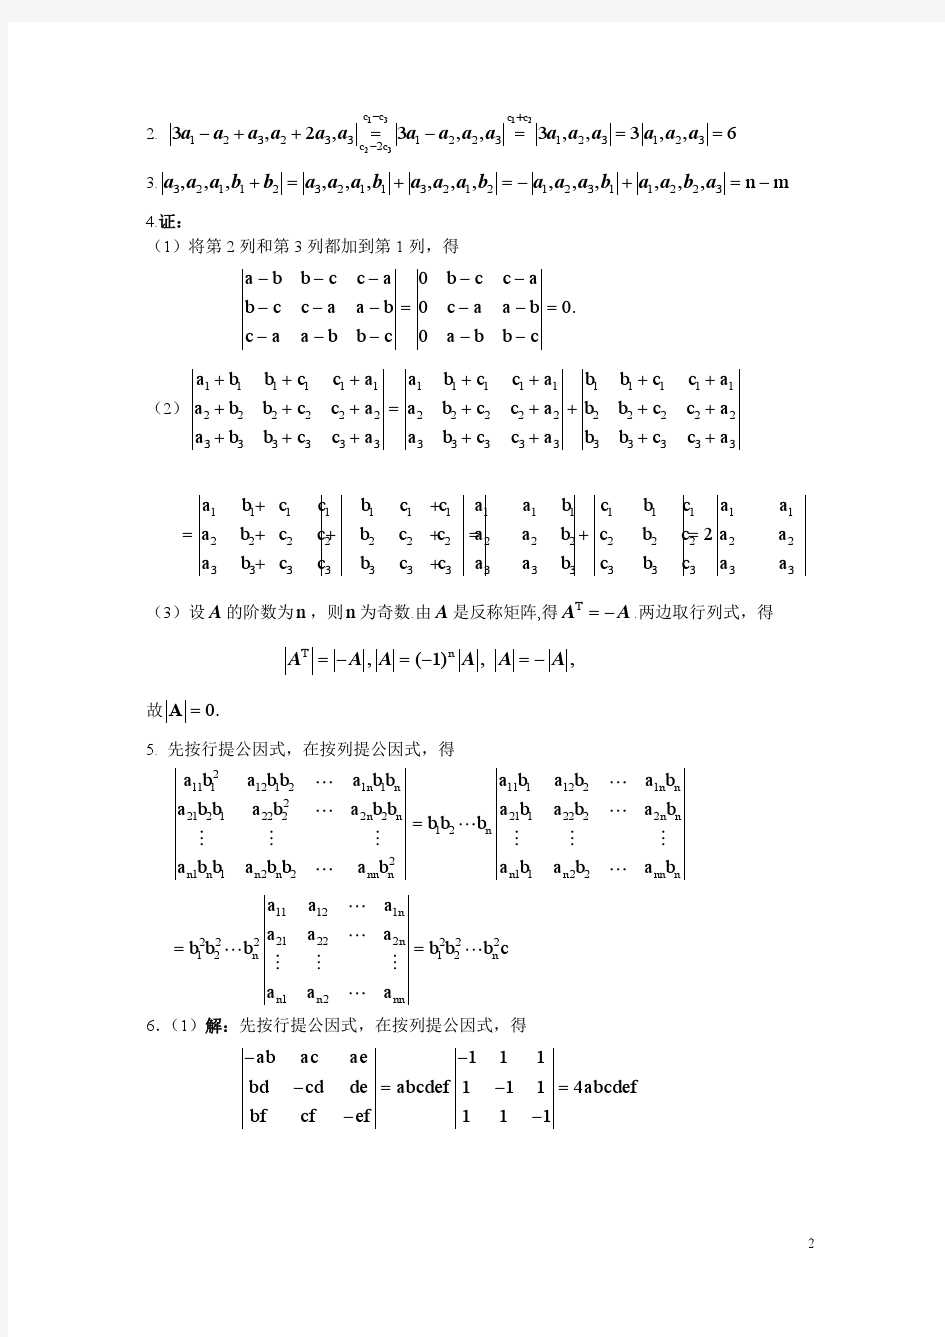 线性代数与解析几何 课后答案 (代万基 廉庆荣)第二章书后习题2